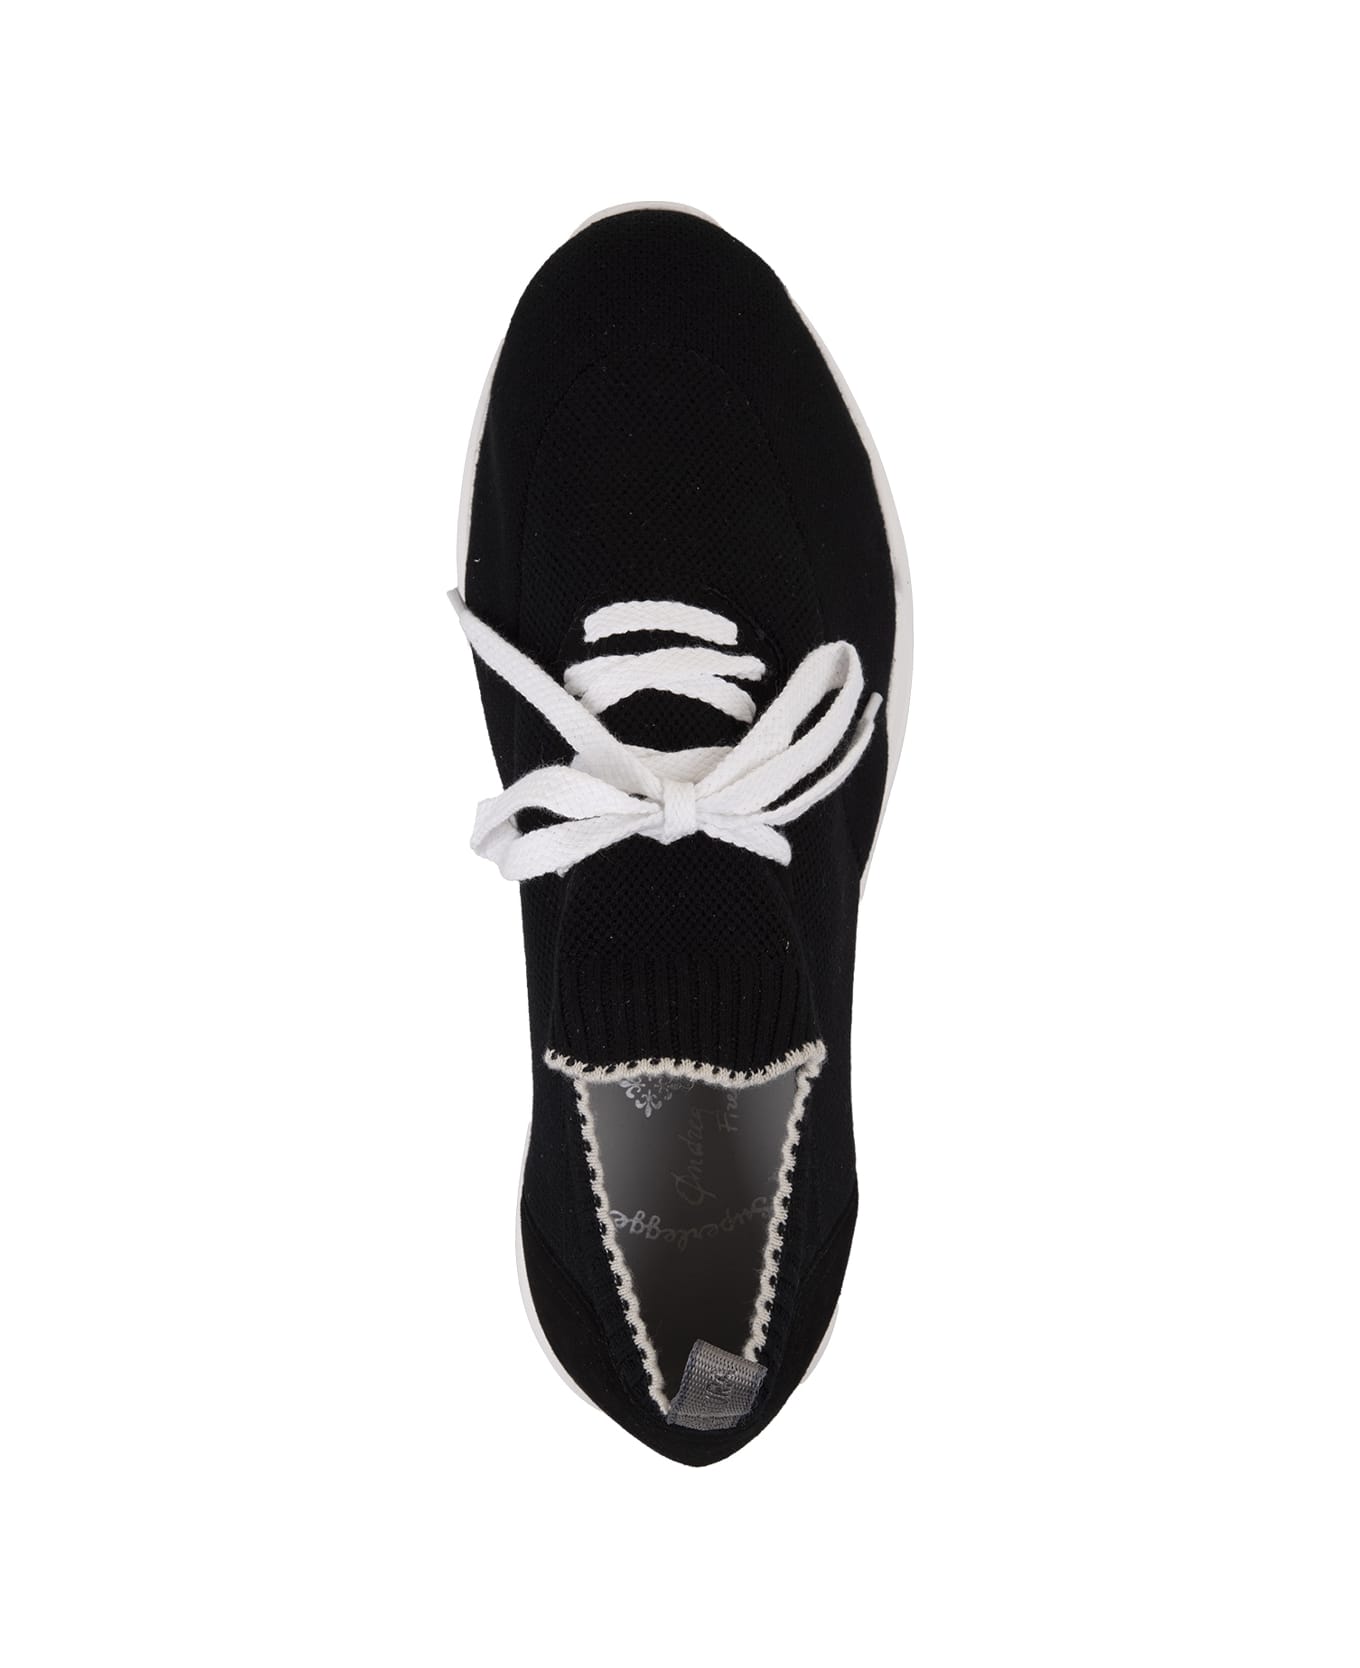 Andrea Ventura W-dragon Sneakers In Black Fashion Fabric - Black